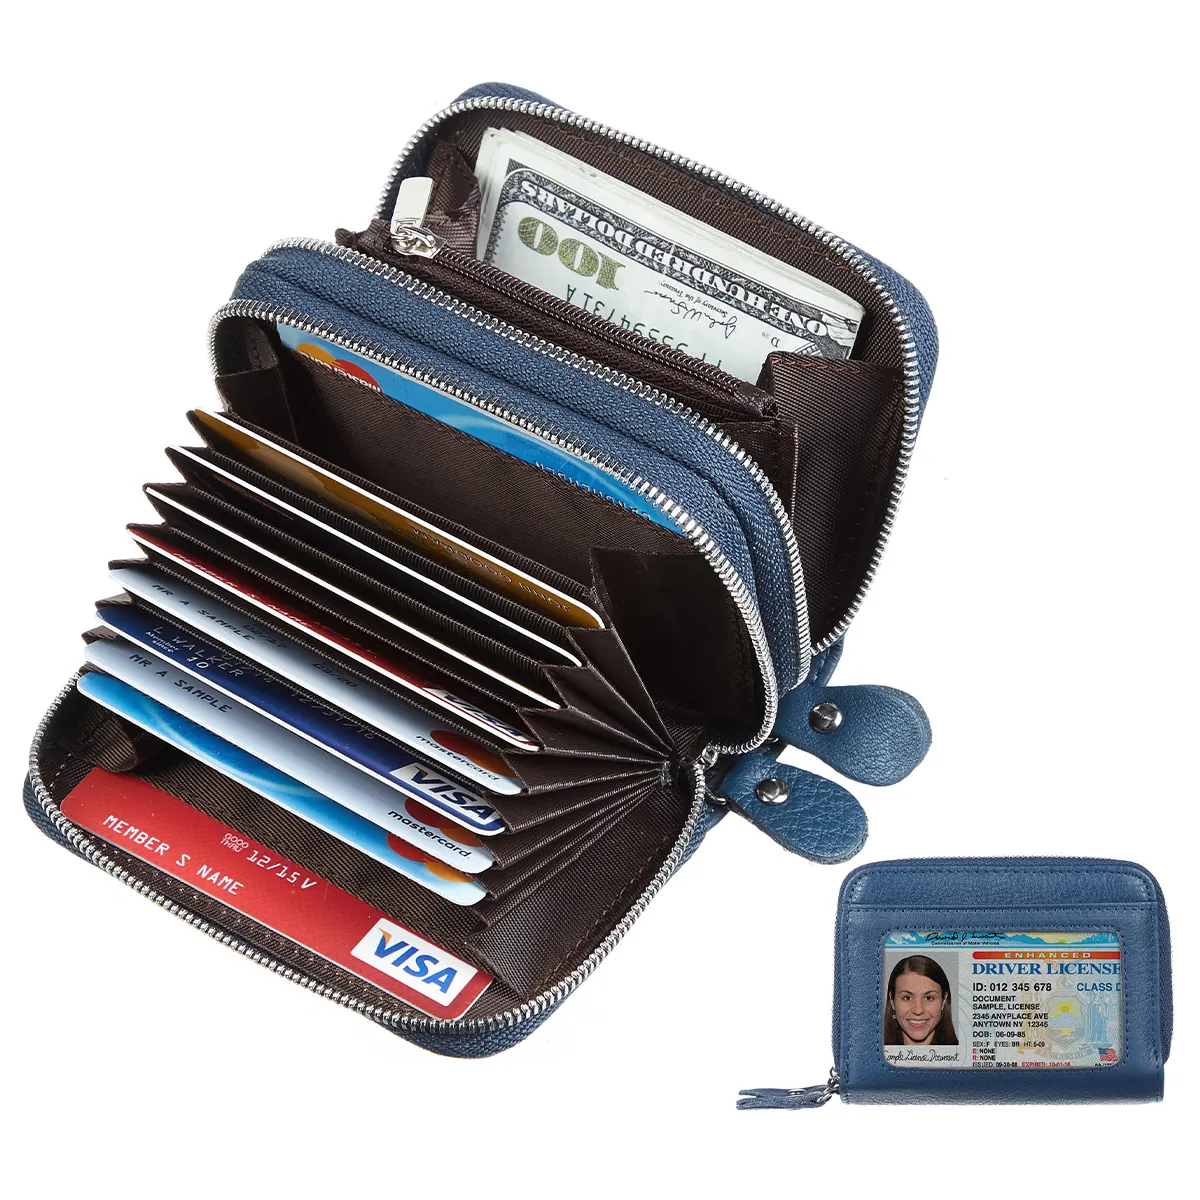 منتج جديد محفظة جلد بتصميم مخصص لحفظ وبقاء كروت الائتمان متعددة البطاقات